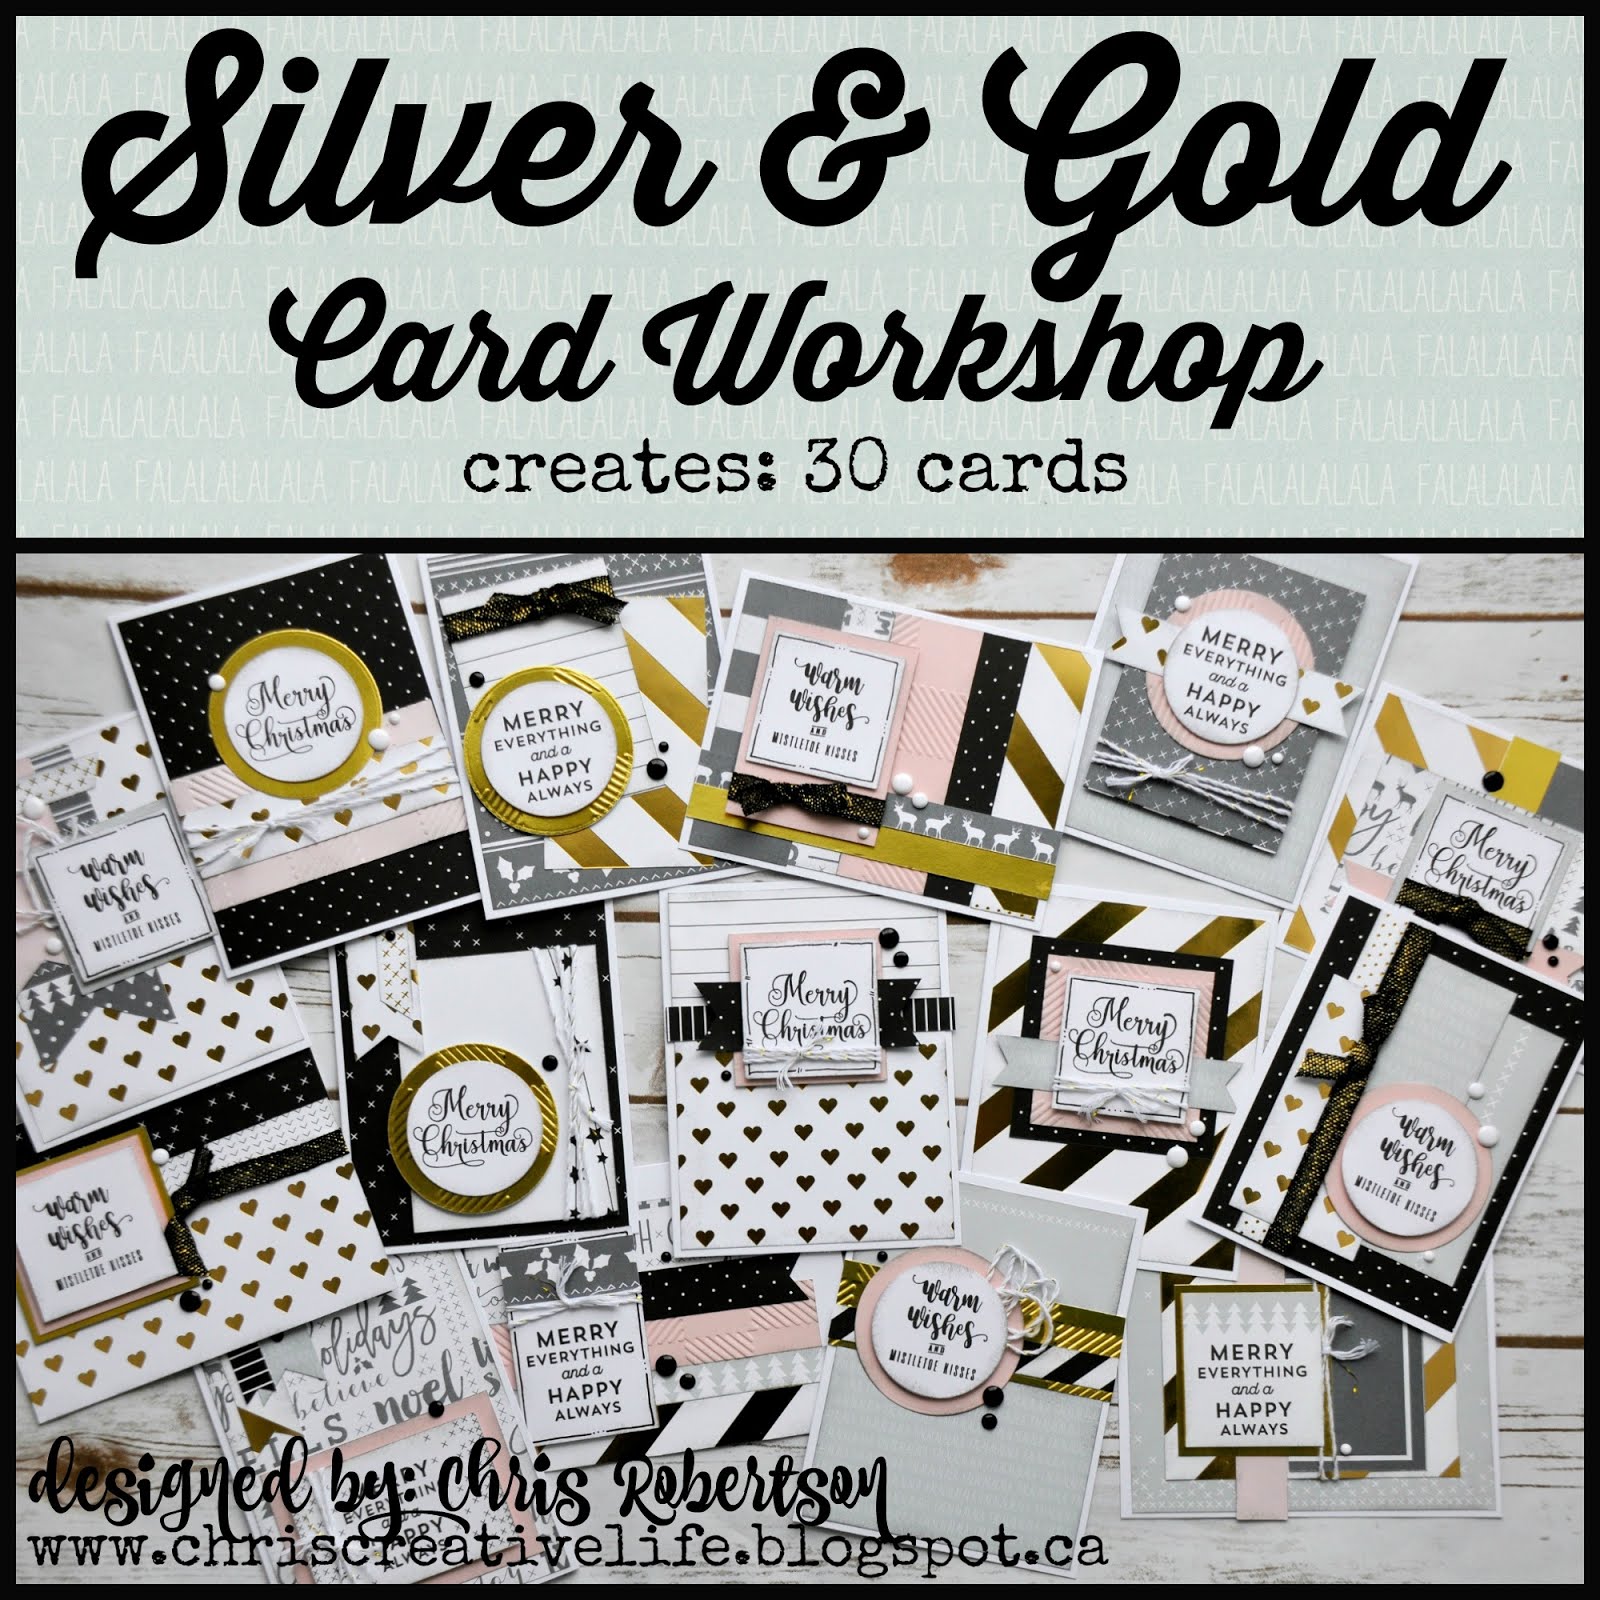 Silver & Gold Cardmaking Workshop